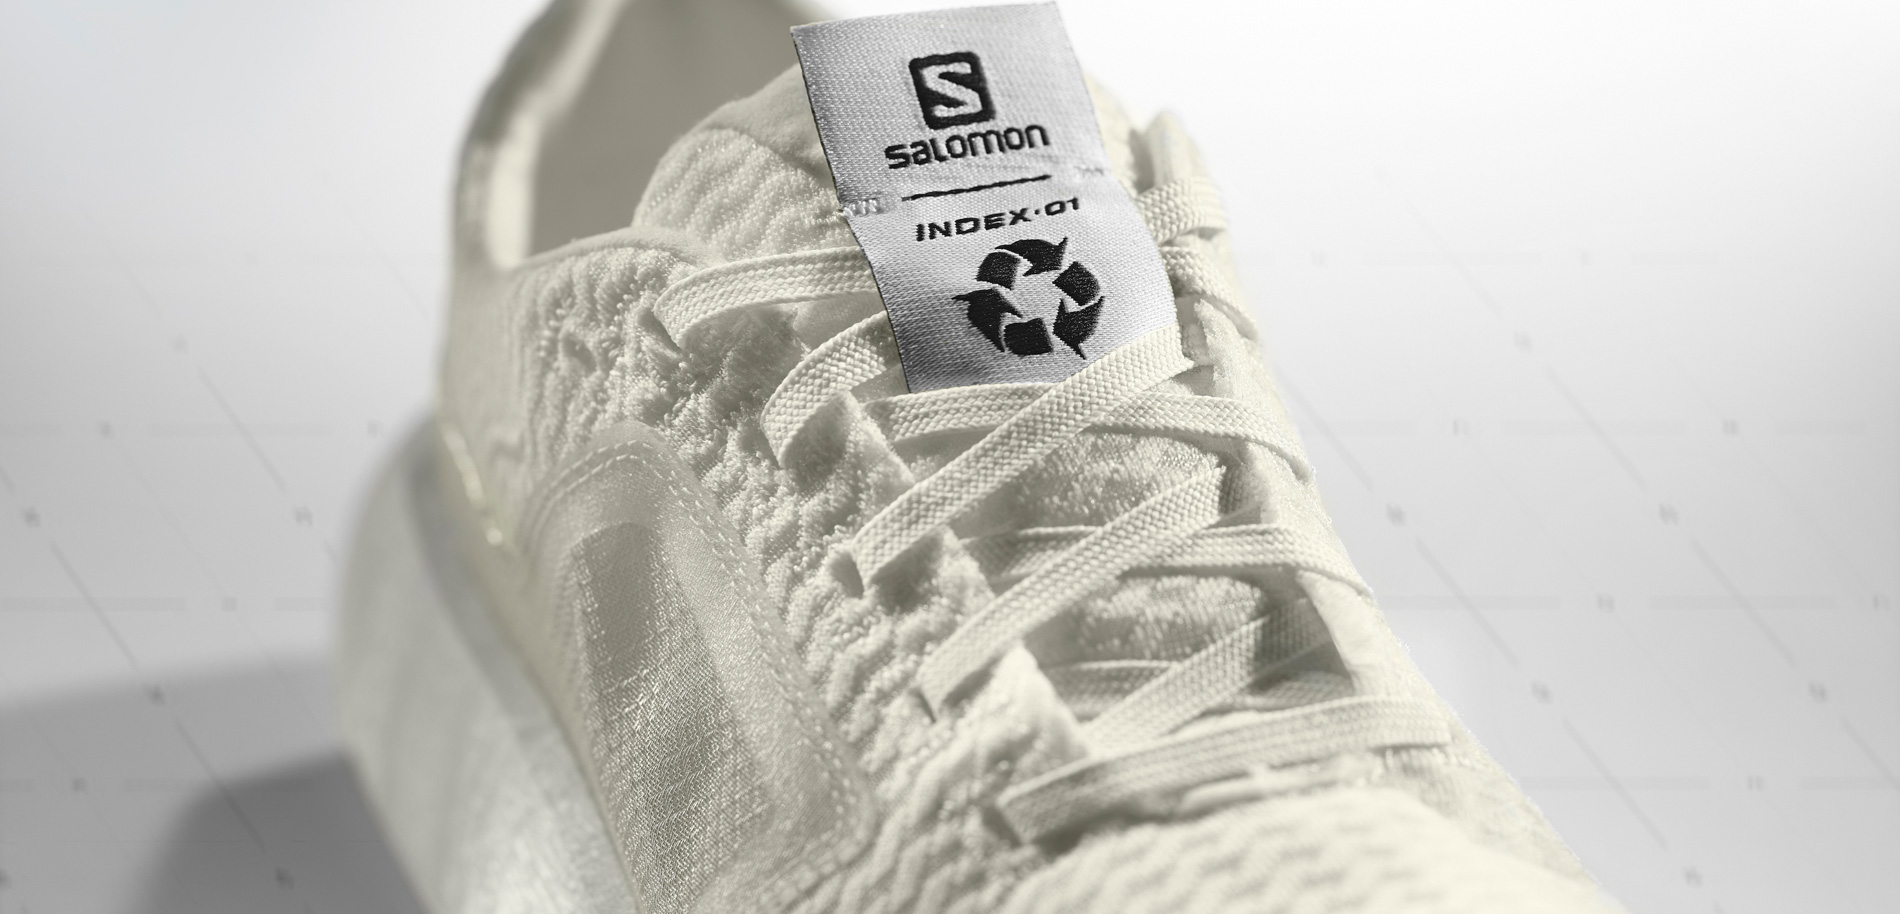 Nach 3 Jahren Forschungs- und Entwicklungsarbeit soll der Salomon Index.01 im Frühjahr 2021 als erster vollständig recycelbarer Schuh der Marke erscheinen.